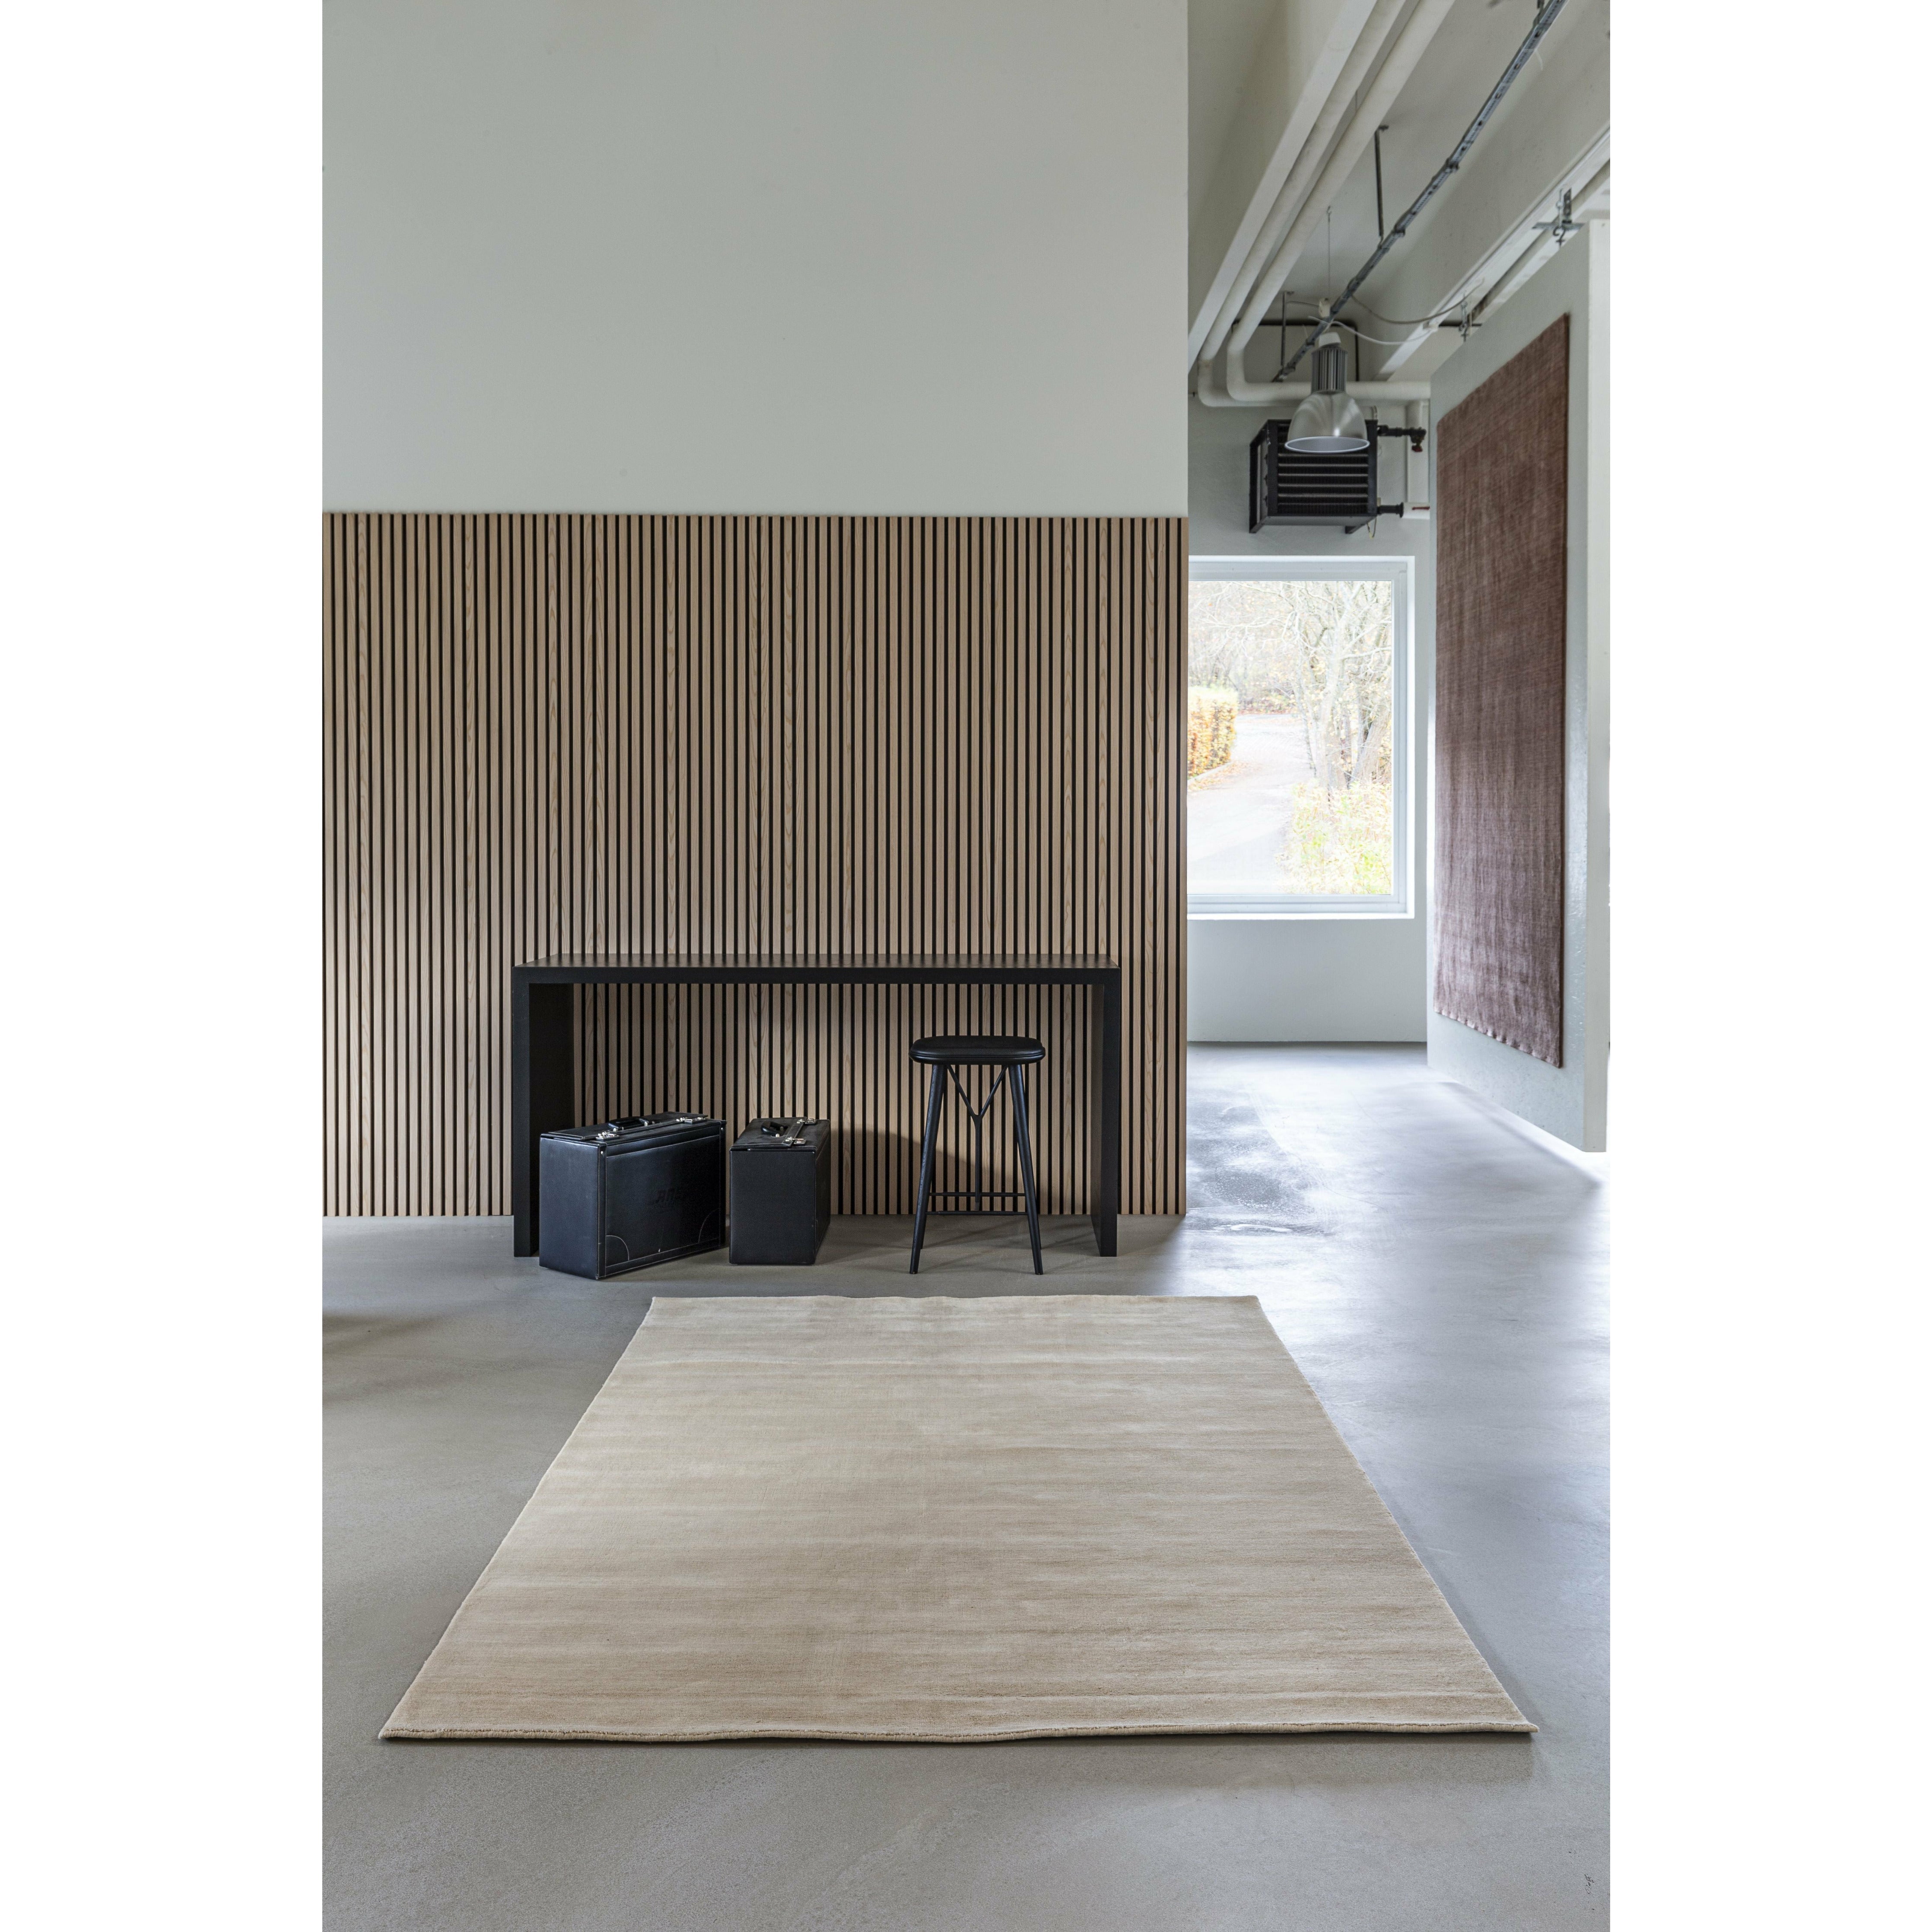 Massimo Earth Bamboo Carpet 200x300, Desert Sand